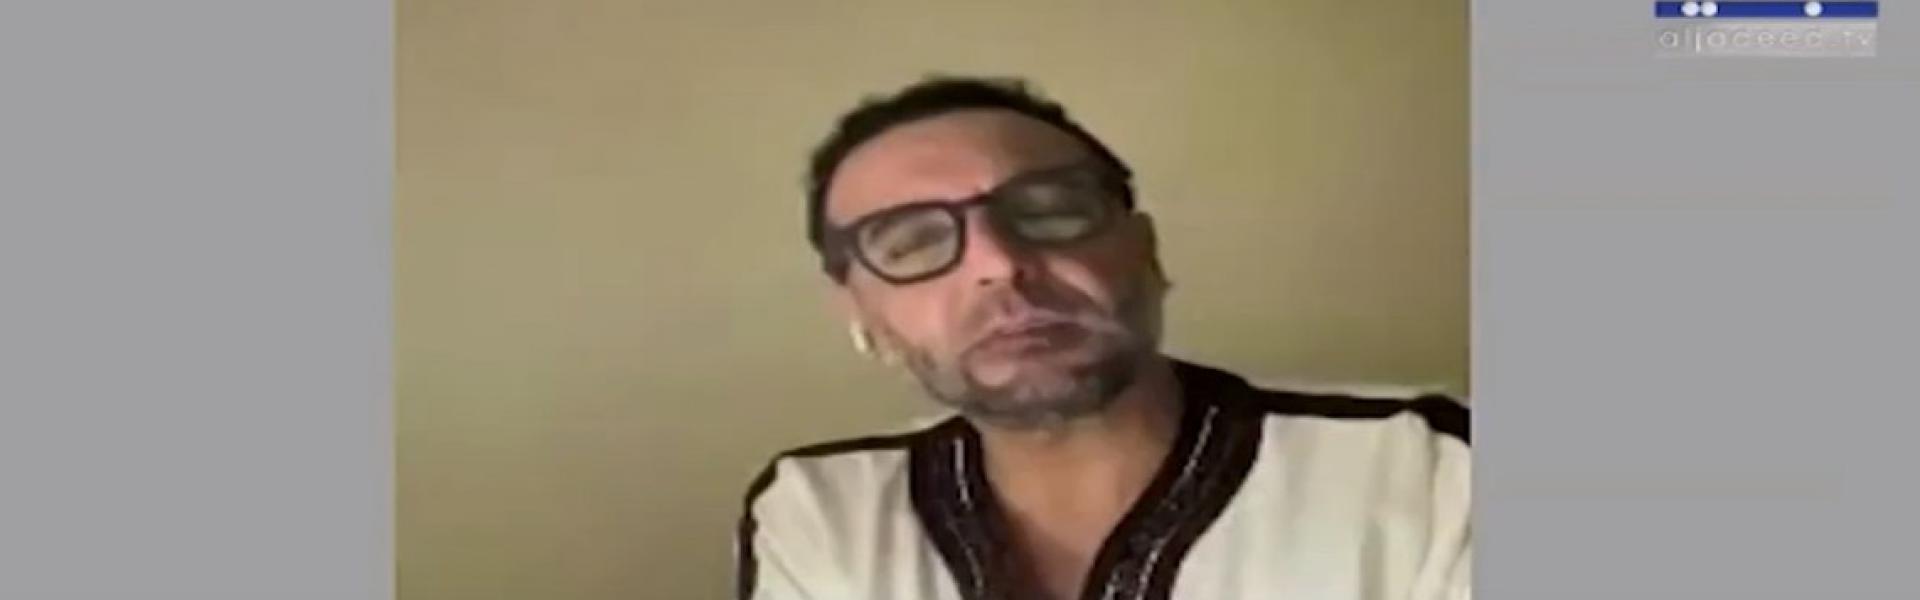 قناة الجديد اللبنانية بثت صورا قالت إنها لهانيبال القذافي من محبسه في غرفة تحت الأرض